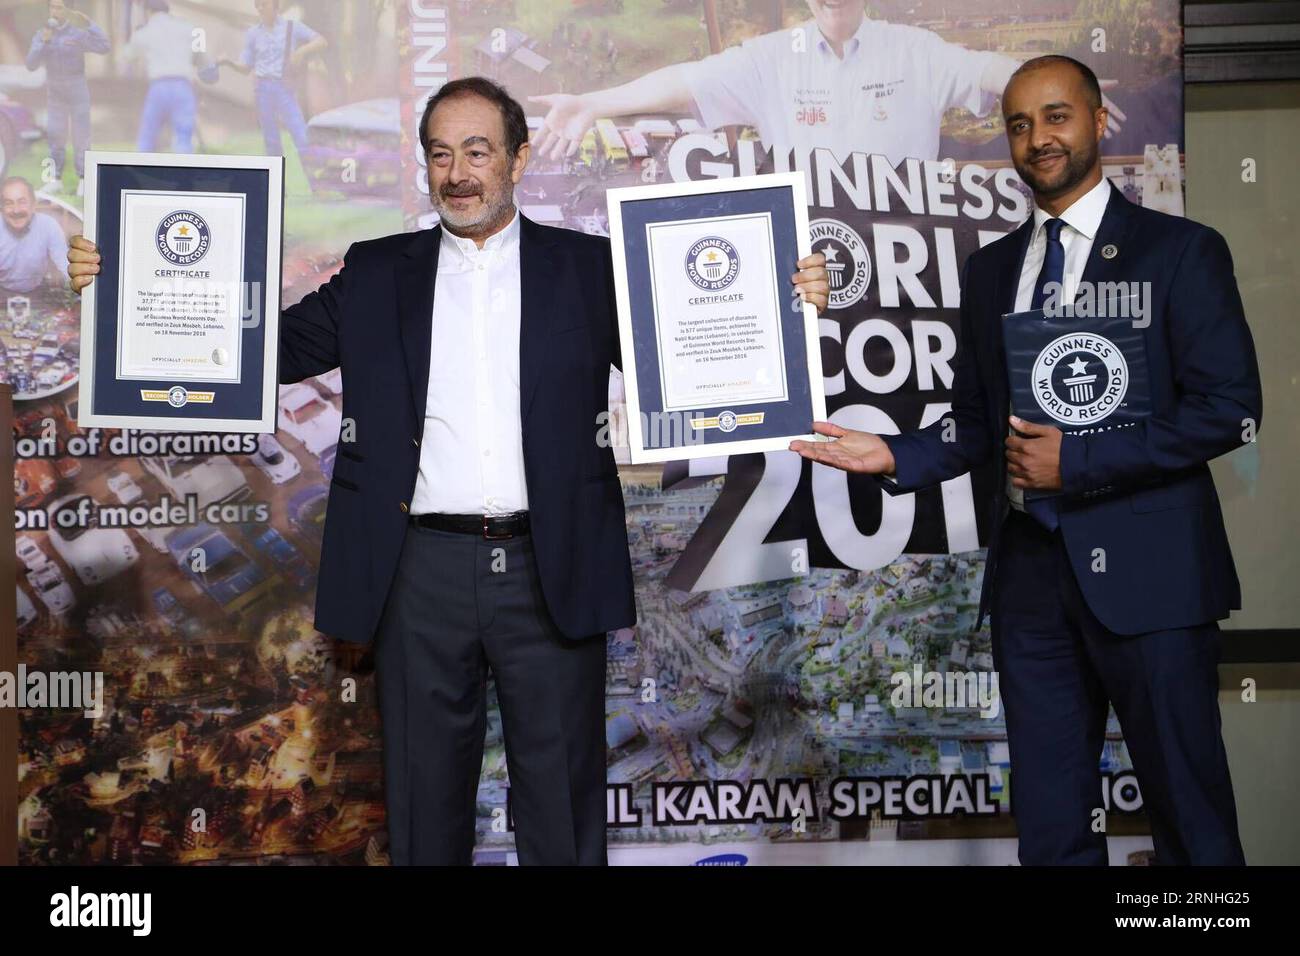 (161117) -- BEIRUT, 16 novembre 2016 () -- Nabil Karam (L) del Libano riceve due certificati di Guinness dei primati per la più grande collezione di modellini di auto e la più grande collezione di diorami, a nord di Beirut, Libano, 16 novembre 2016. () (zcc) LIBANO-BEIRUT-GUINNESS WORLD RECORDS Xinhua PUBLICATIONxNOTxINxCHN Beirut 16 novembre 2016 Nabil Karam l del Libano riceve due certificati di Guinness World Records per la più grande collezione di Model Cars e la più grande collezione di diorami a nord di Beirut Libano 16 novembre 2016 ZCC Libano Beirut Guinness World Records XINHUA PUBLICATIONxNOTxINx Foto Stock